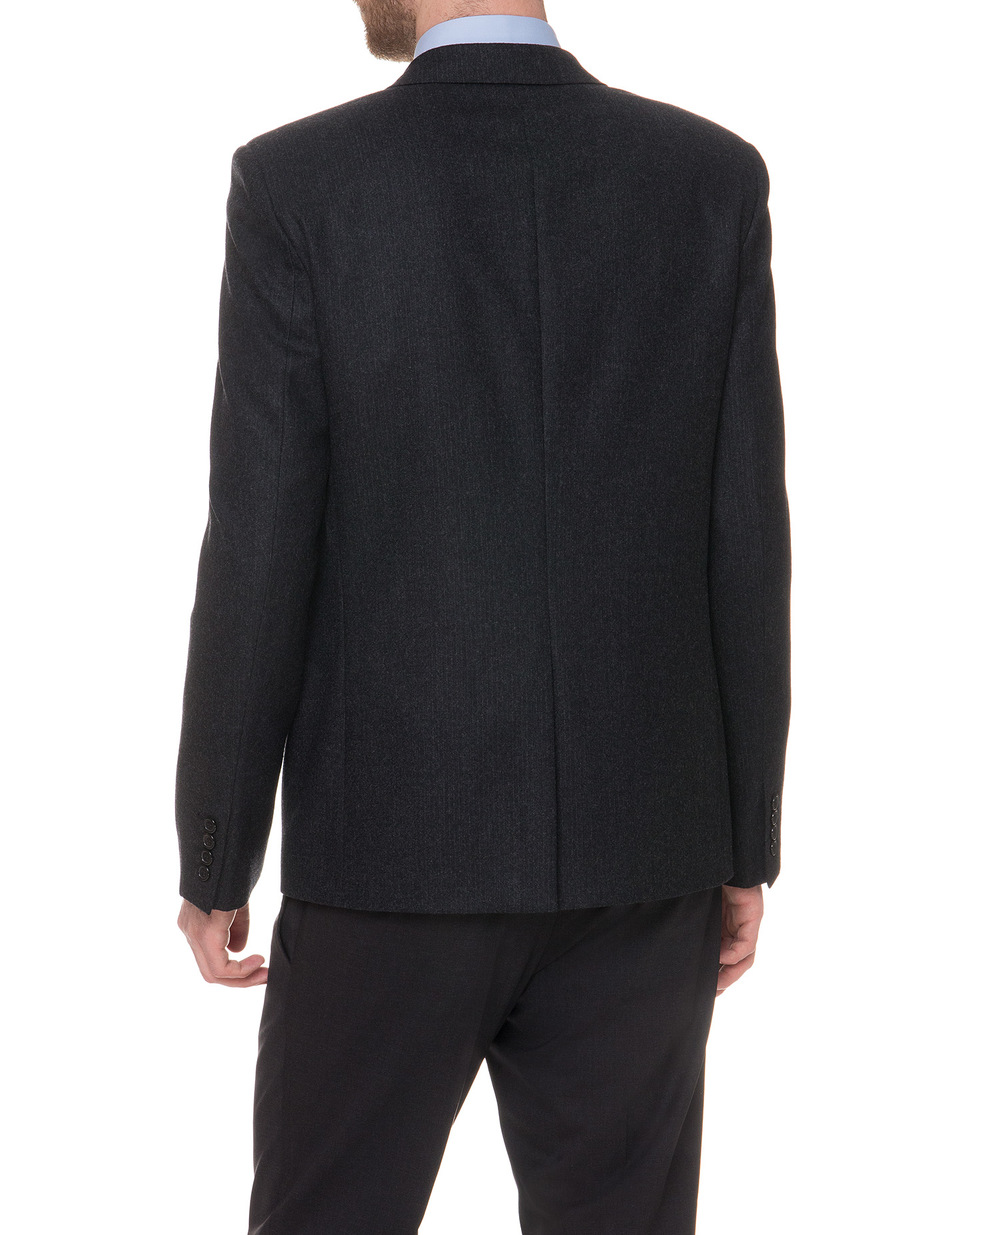 Шерстяной пиджак Saint Laurent 464740-Y593J, серый цвет • Купить в интернет-магазине Kameron